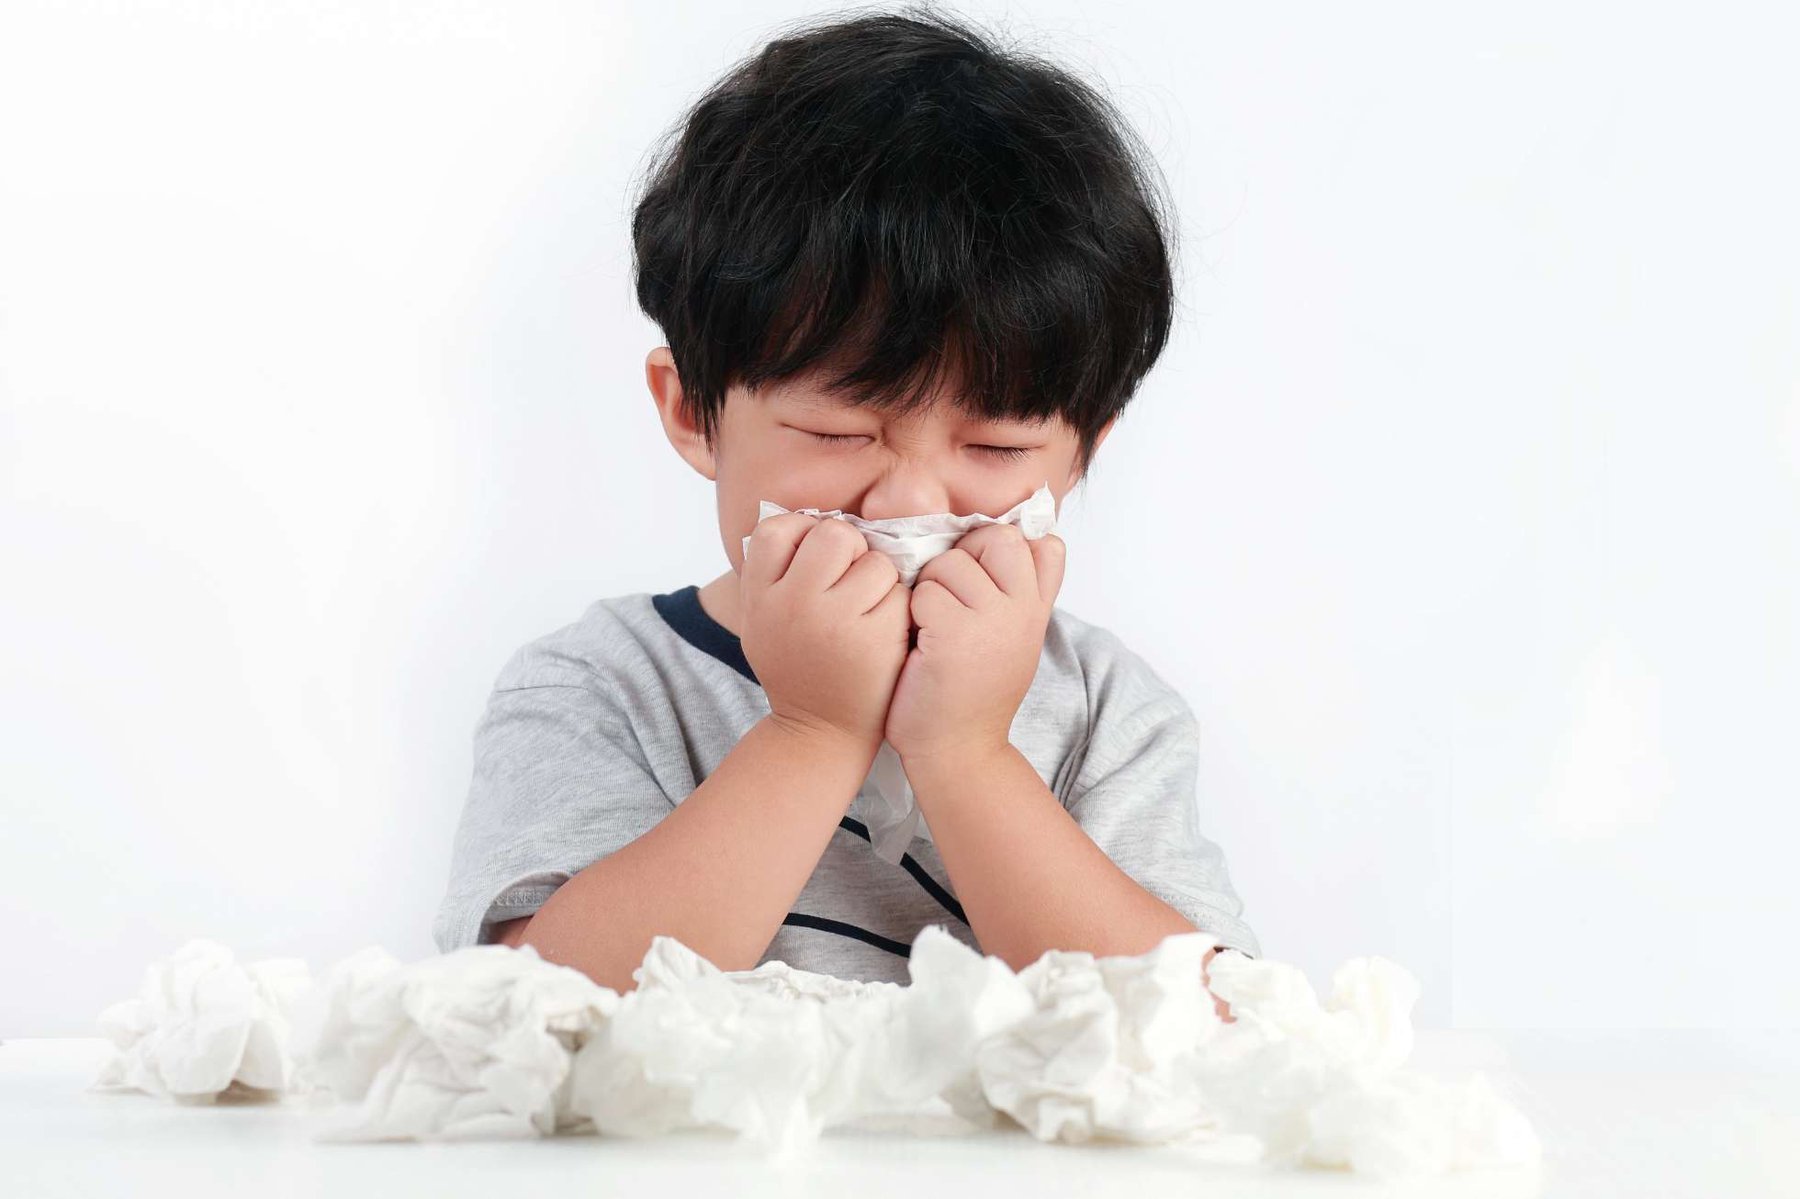 Tiêm vacxin phòng cúm có tác dụng trong bao lâu? - ảnh 1